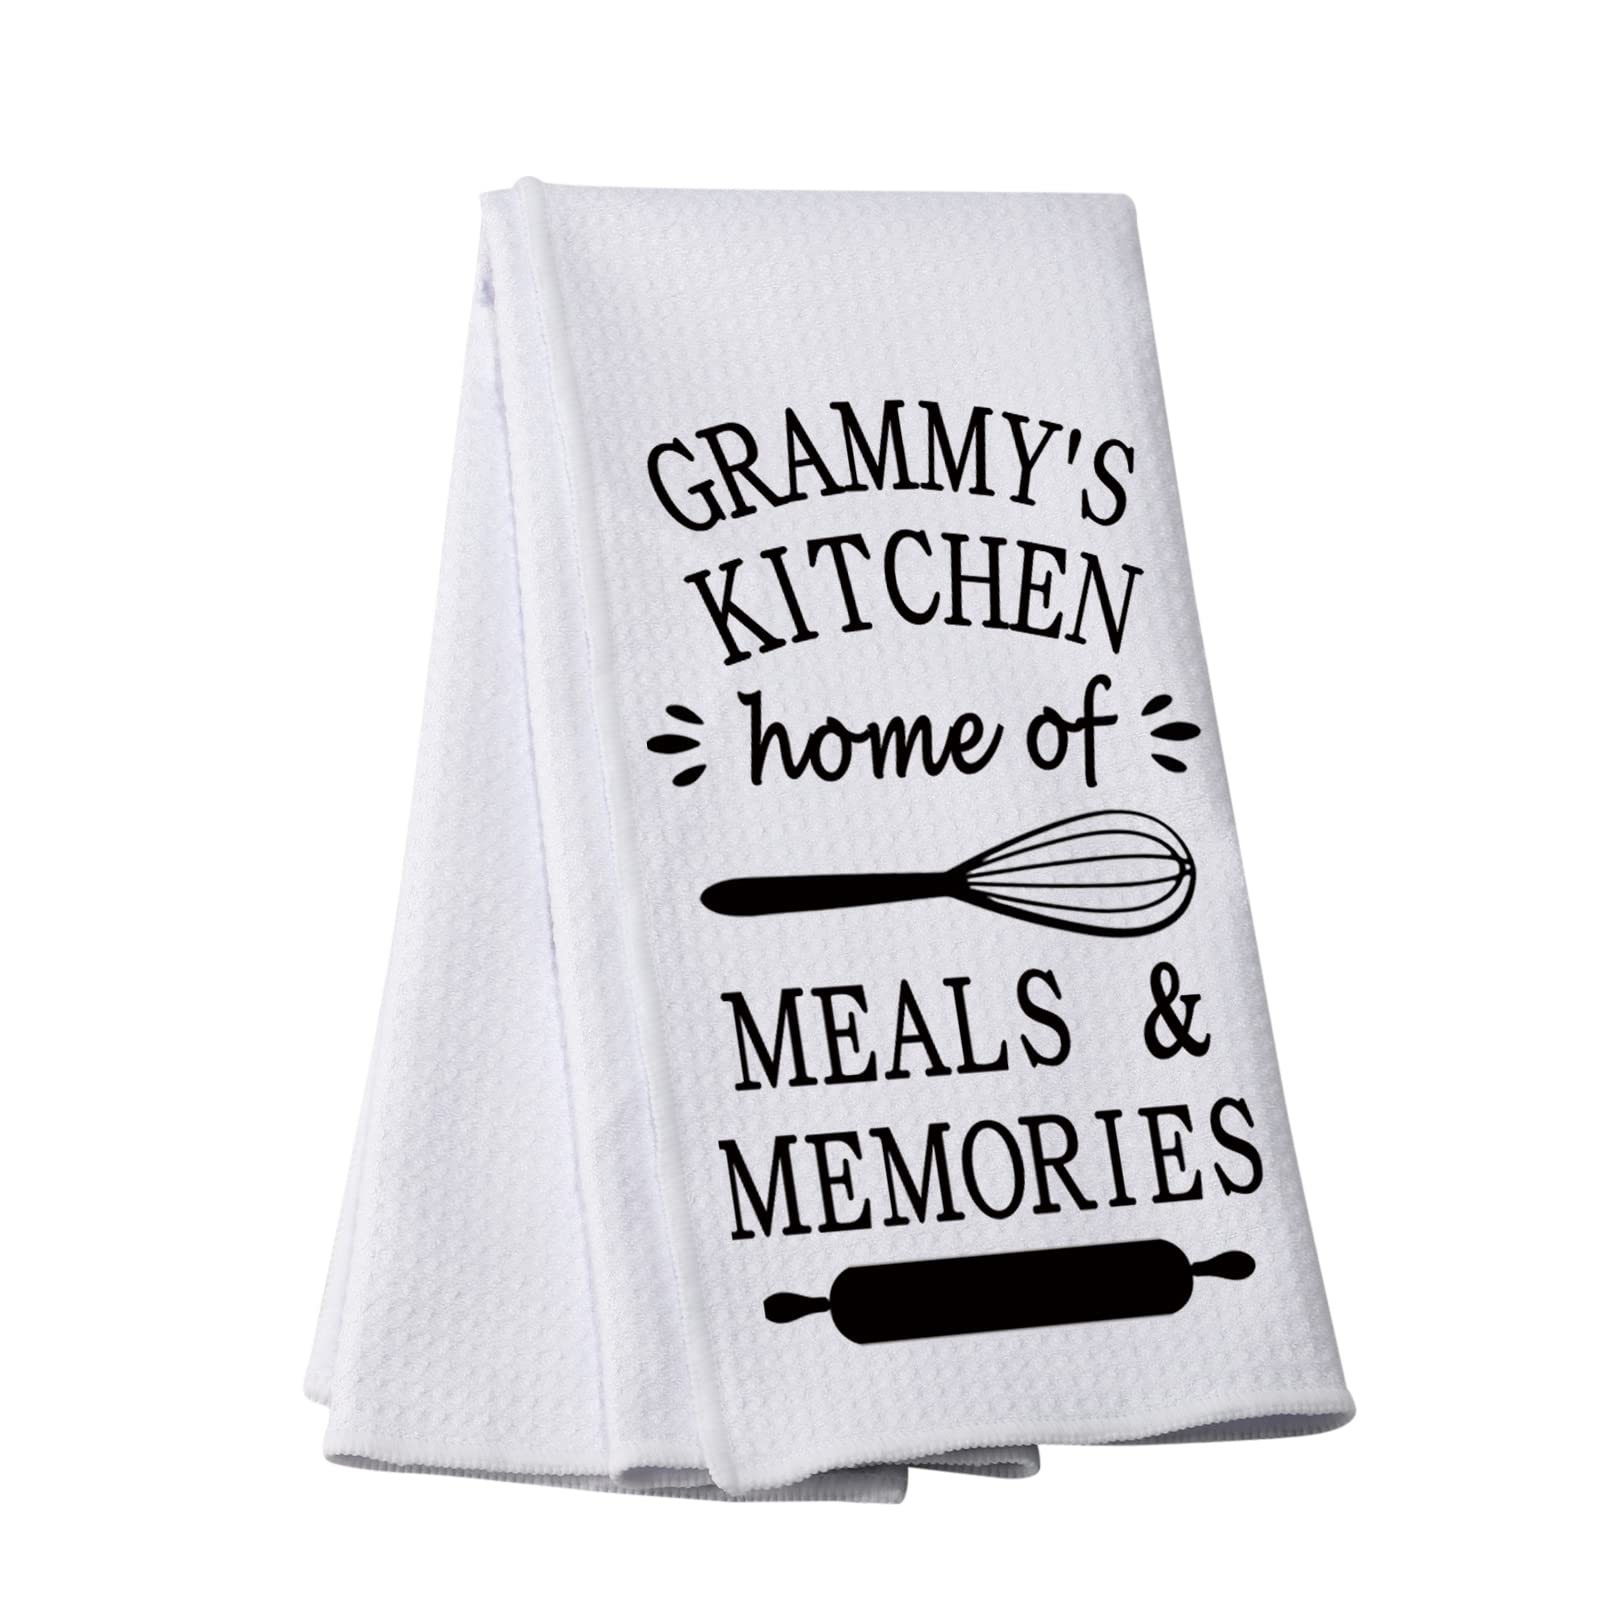 PWHAOO Funny Grandma’s Kitchen Towel Grandma’s Kitchen Home of Meals and Memories Kitchen Towel Grandma Kitchen Decor (Home of Meals T)